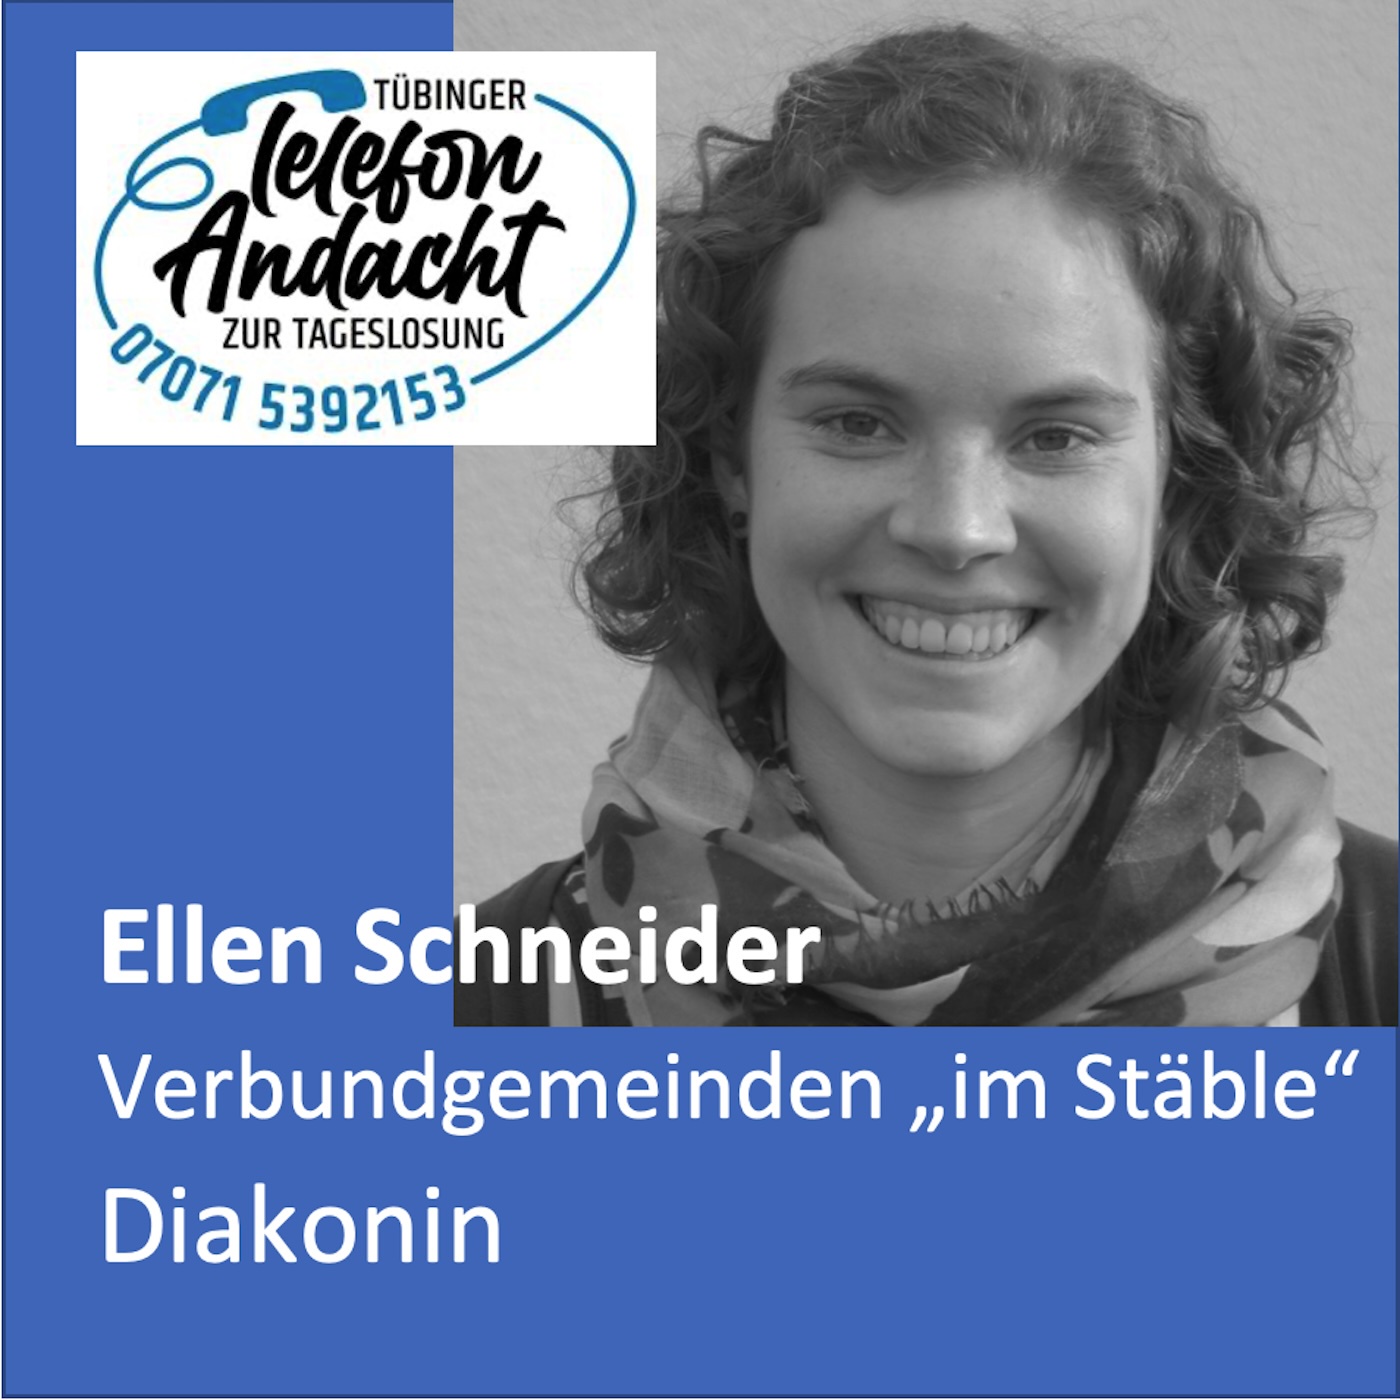 24 07 16 Ellen Schneider